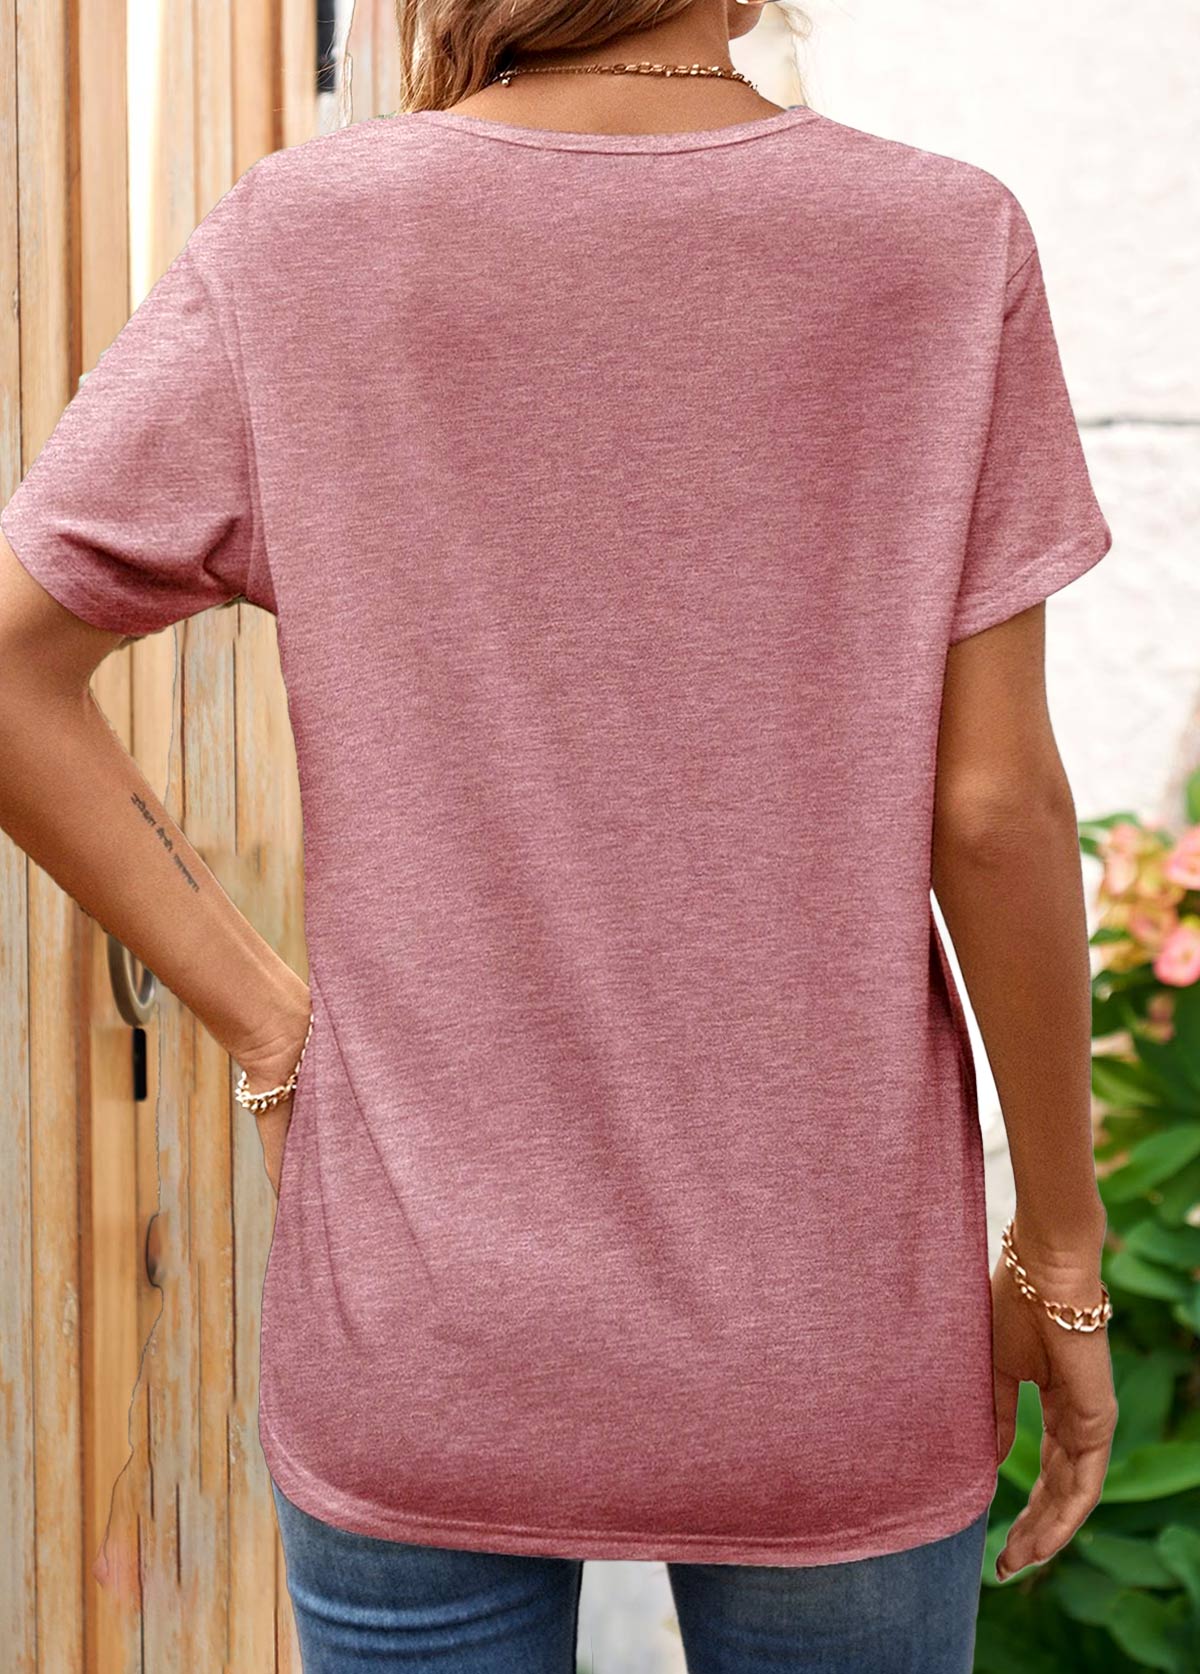 Dusty Pink Criss Cross Short Sleeve T Shirt